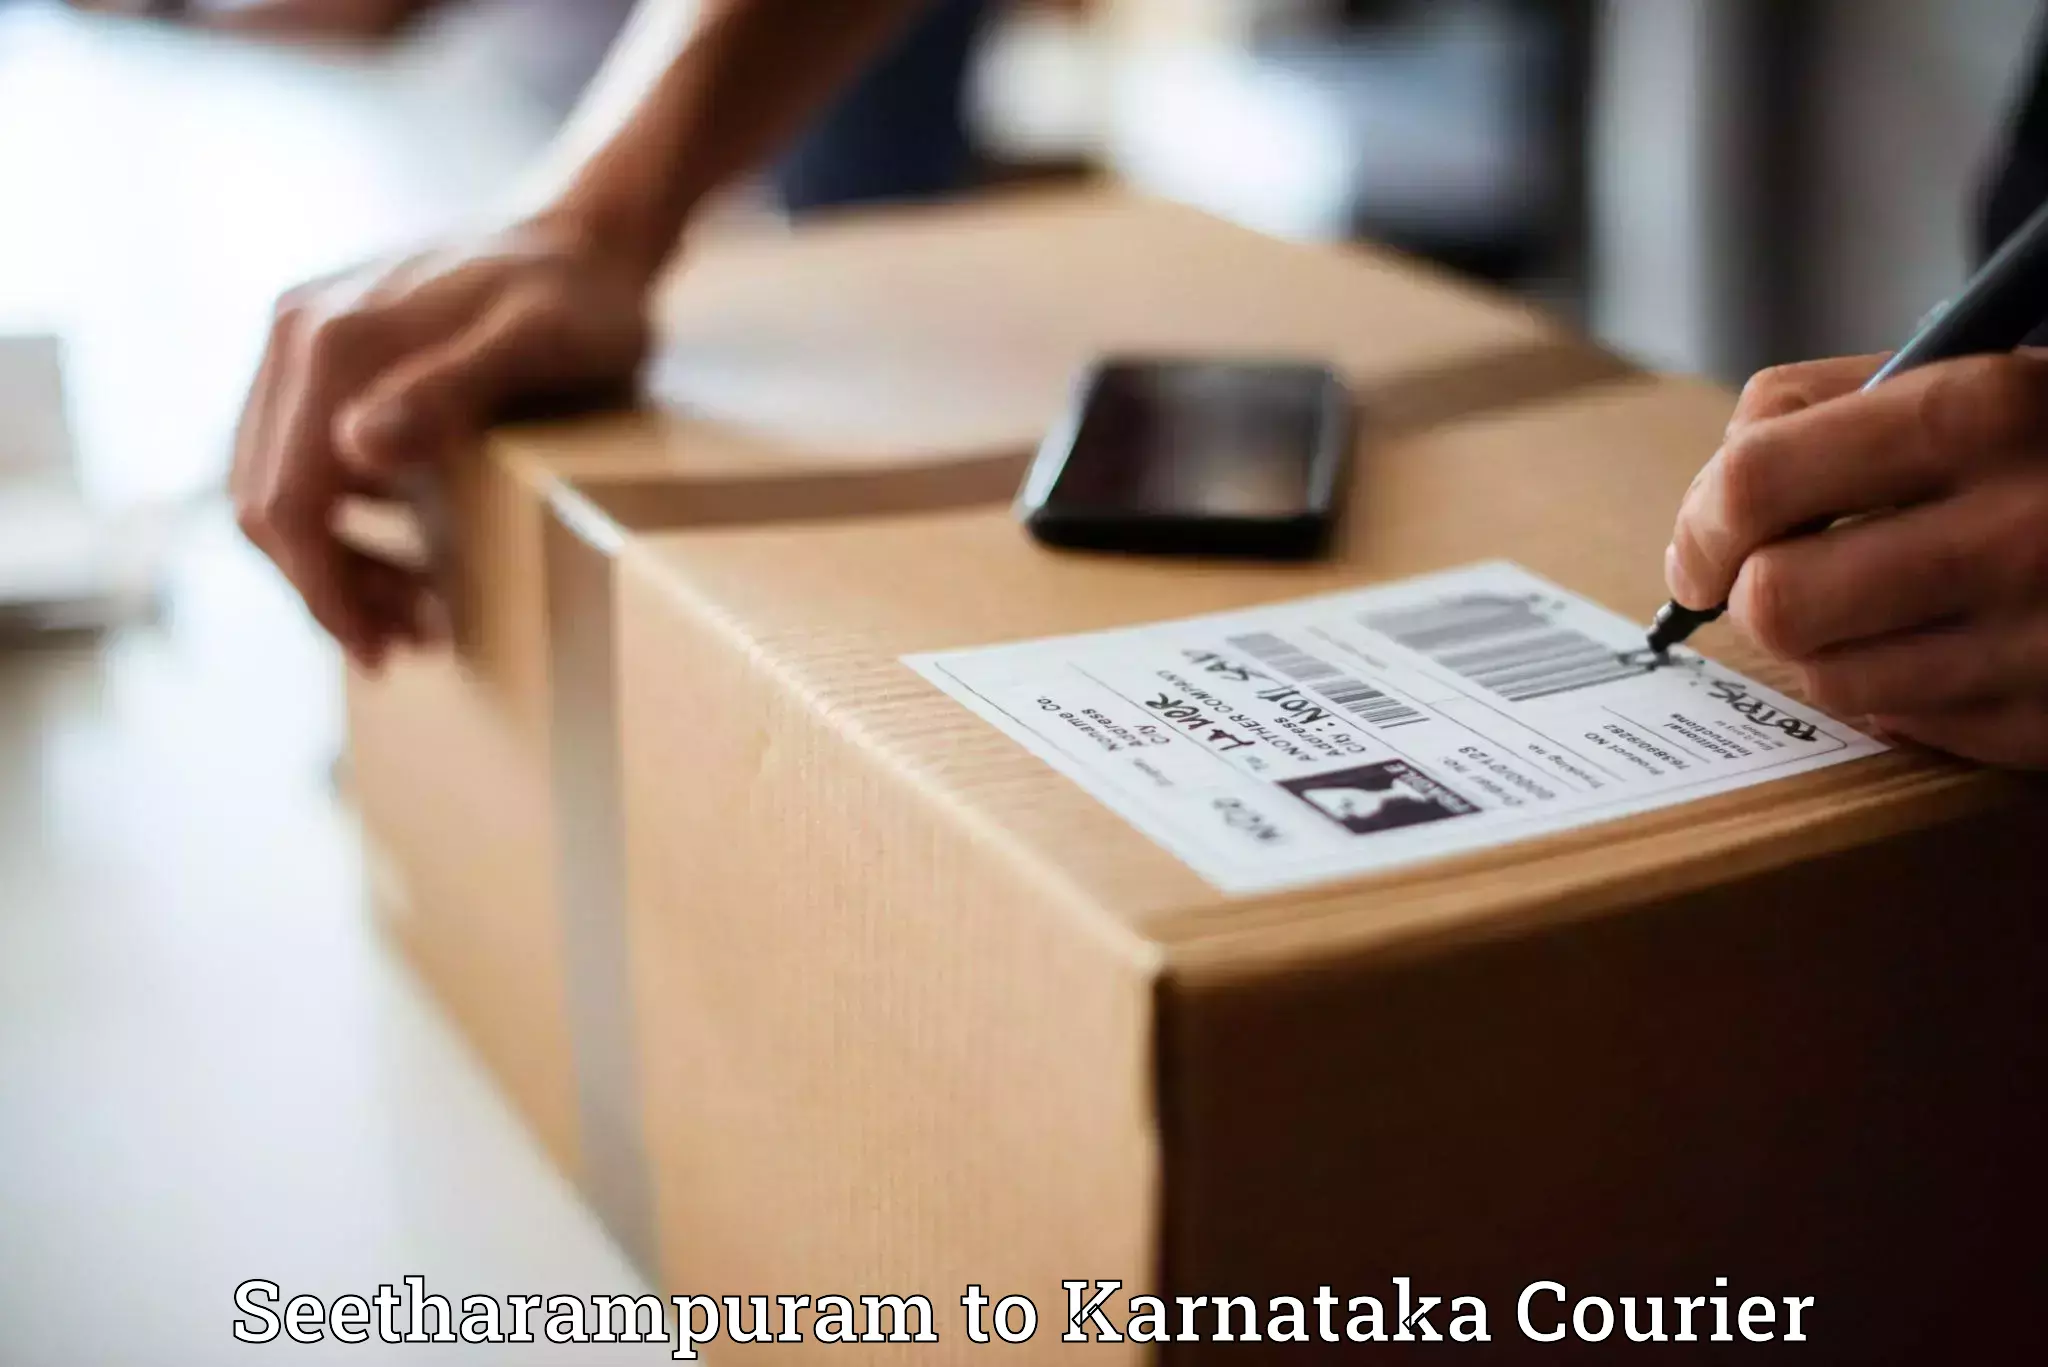 Express package handling Seetharampuram to Gundlupete